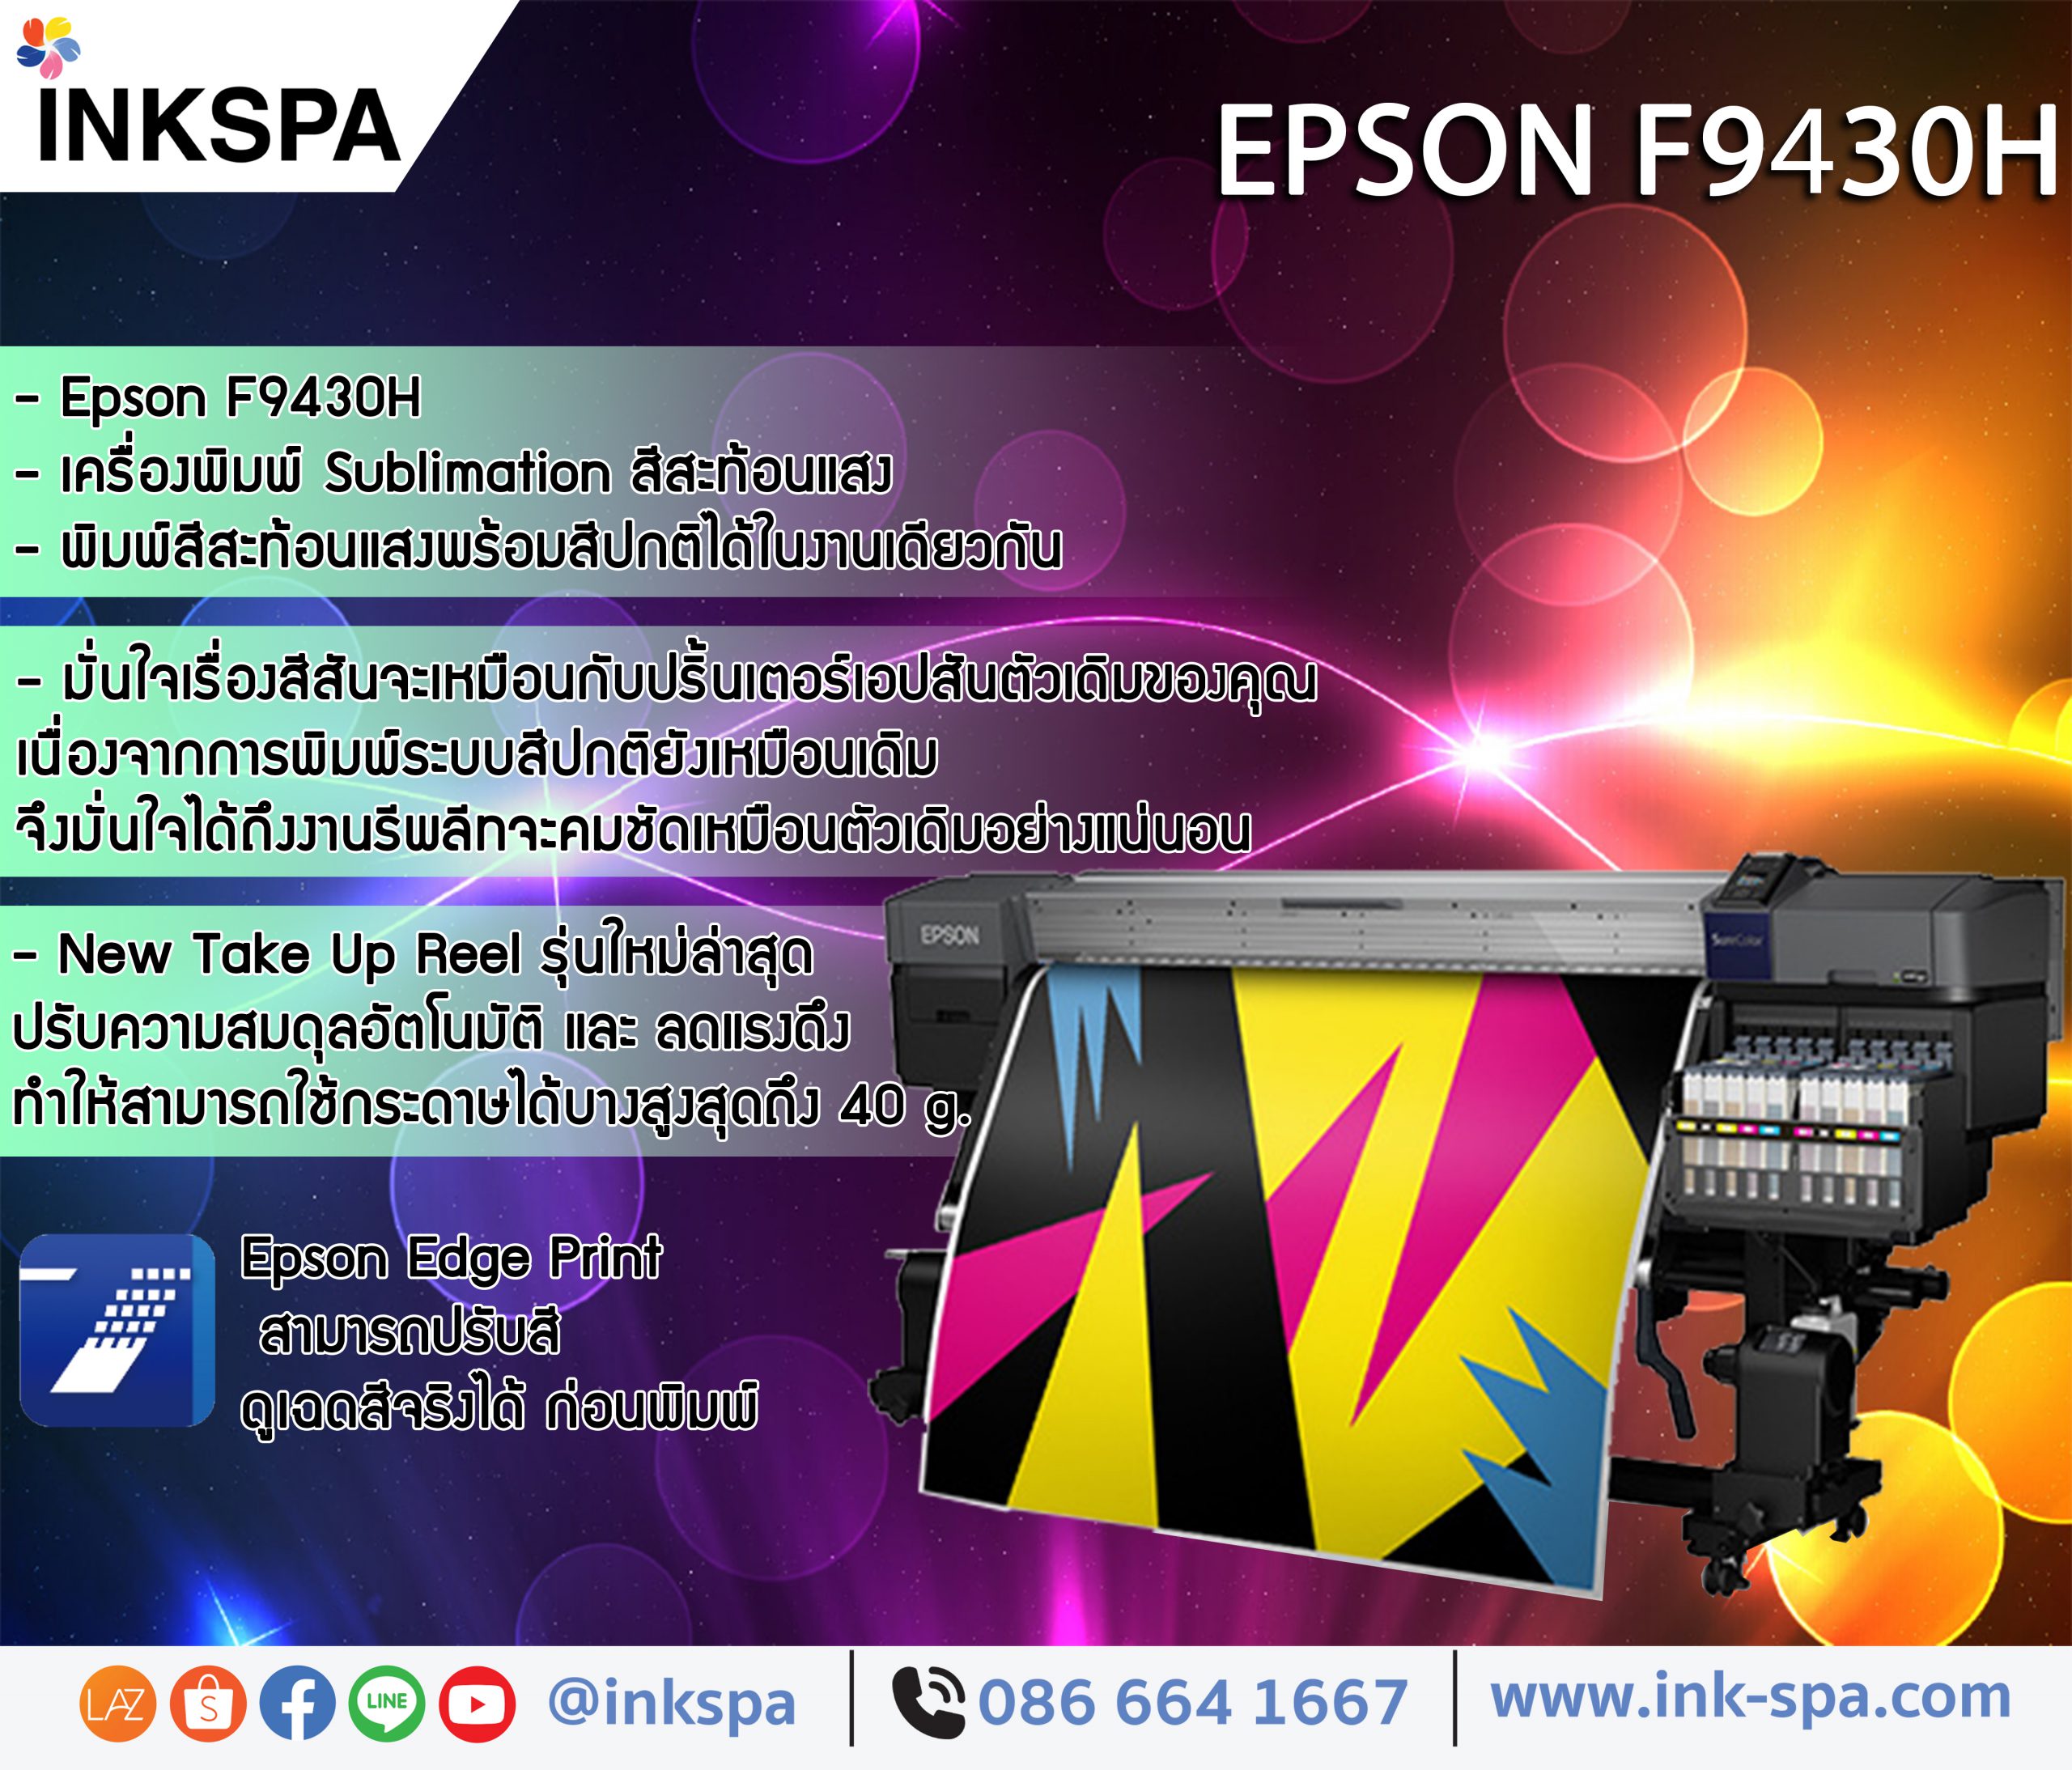 EPSON F9430H ปริ้นเตอร์สีสะท้อนแสงแห่งอนาคต พิมพ์งานสีปกติและสีสะท้อนแสงได้ในเครื่องเดียว